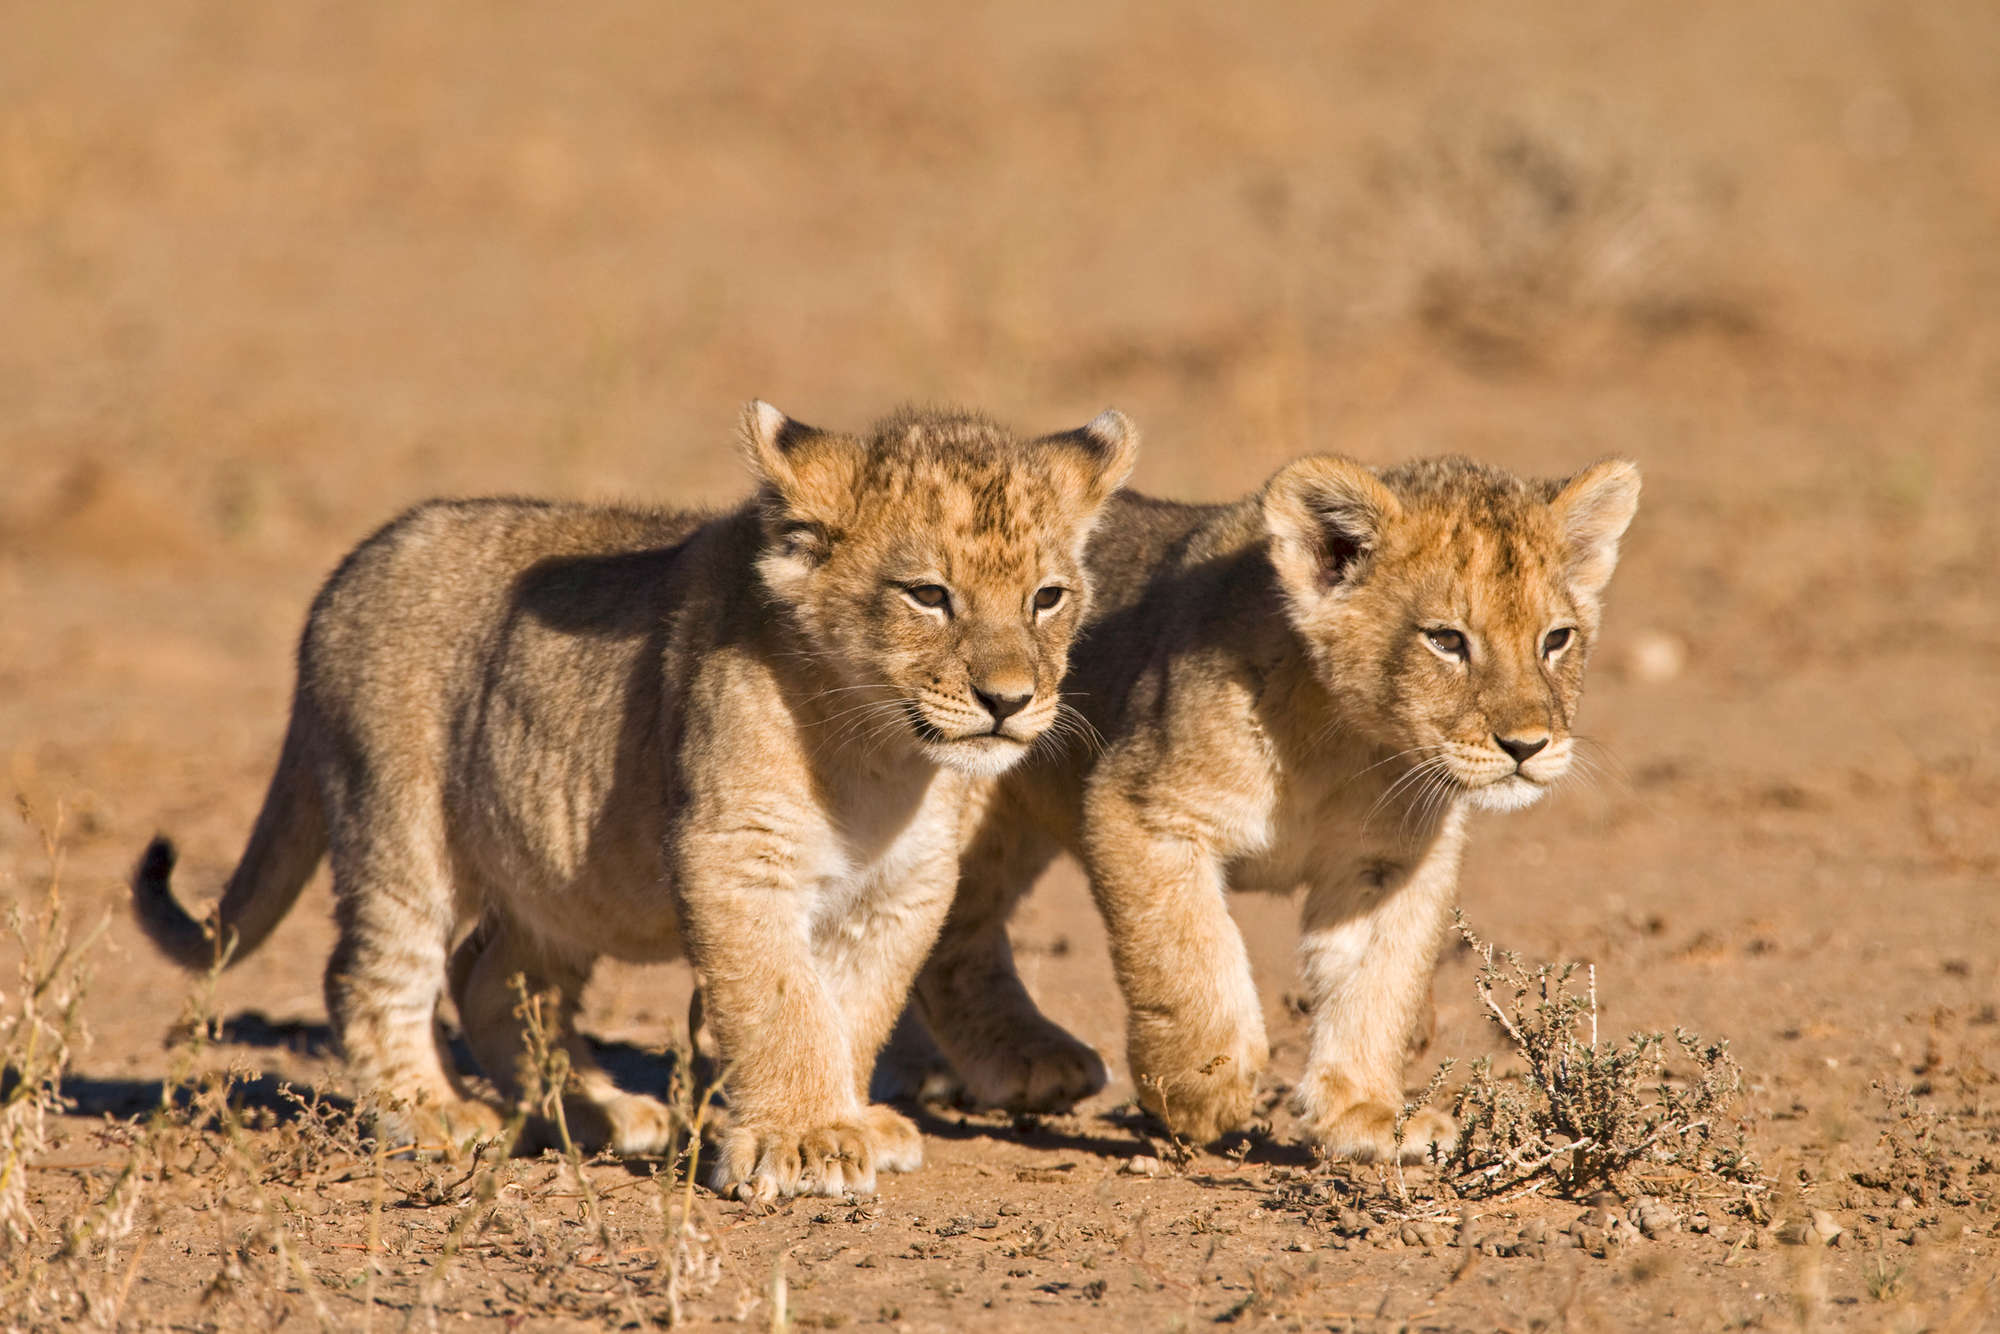             Löwen Fototapete mit zwei Jungen in Freiheit auf Matt Glattvlies
        